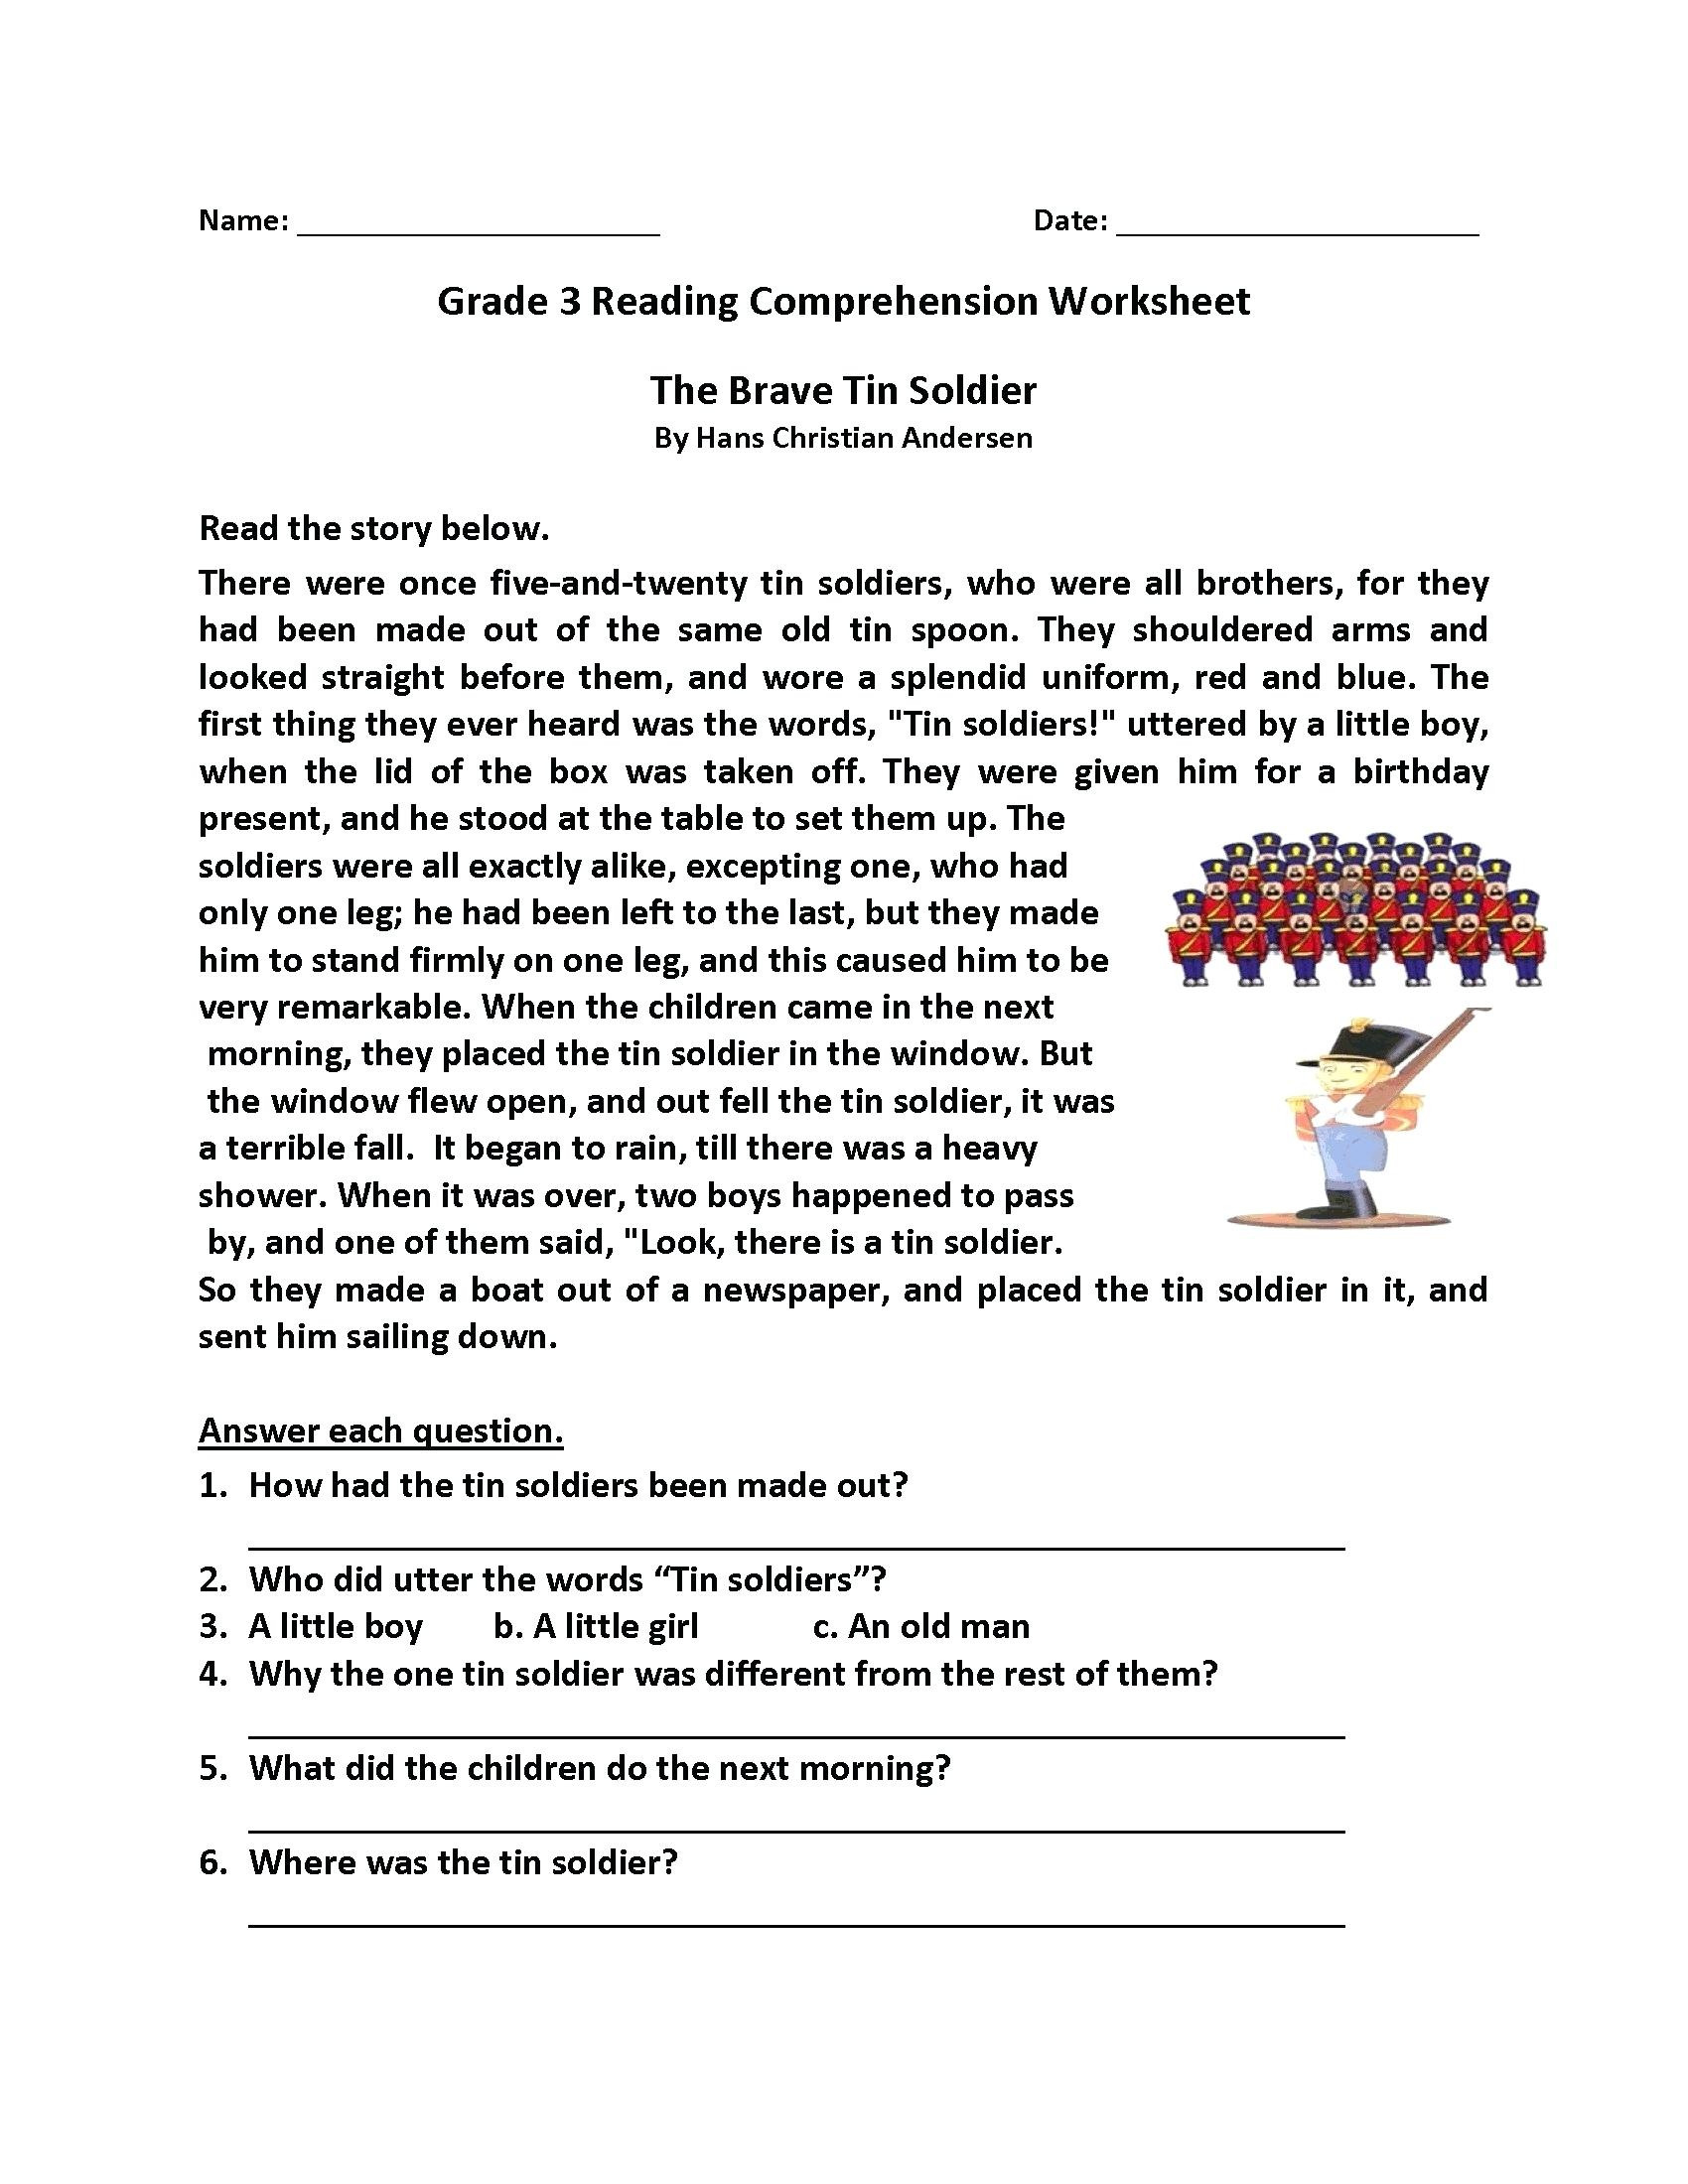 comprehension-online-pdf-worksheet-for-grade-3-year-6-comprehension